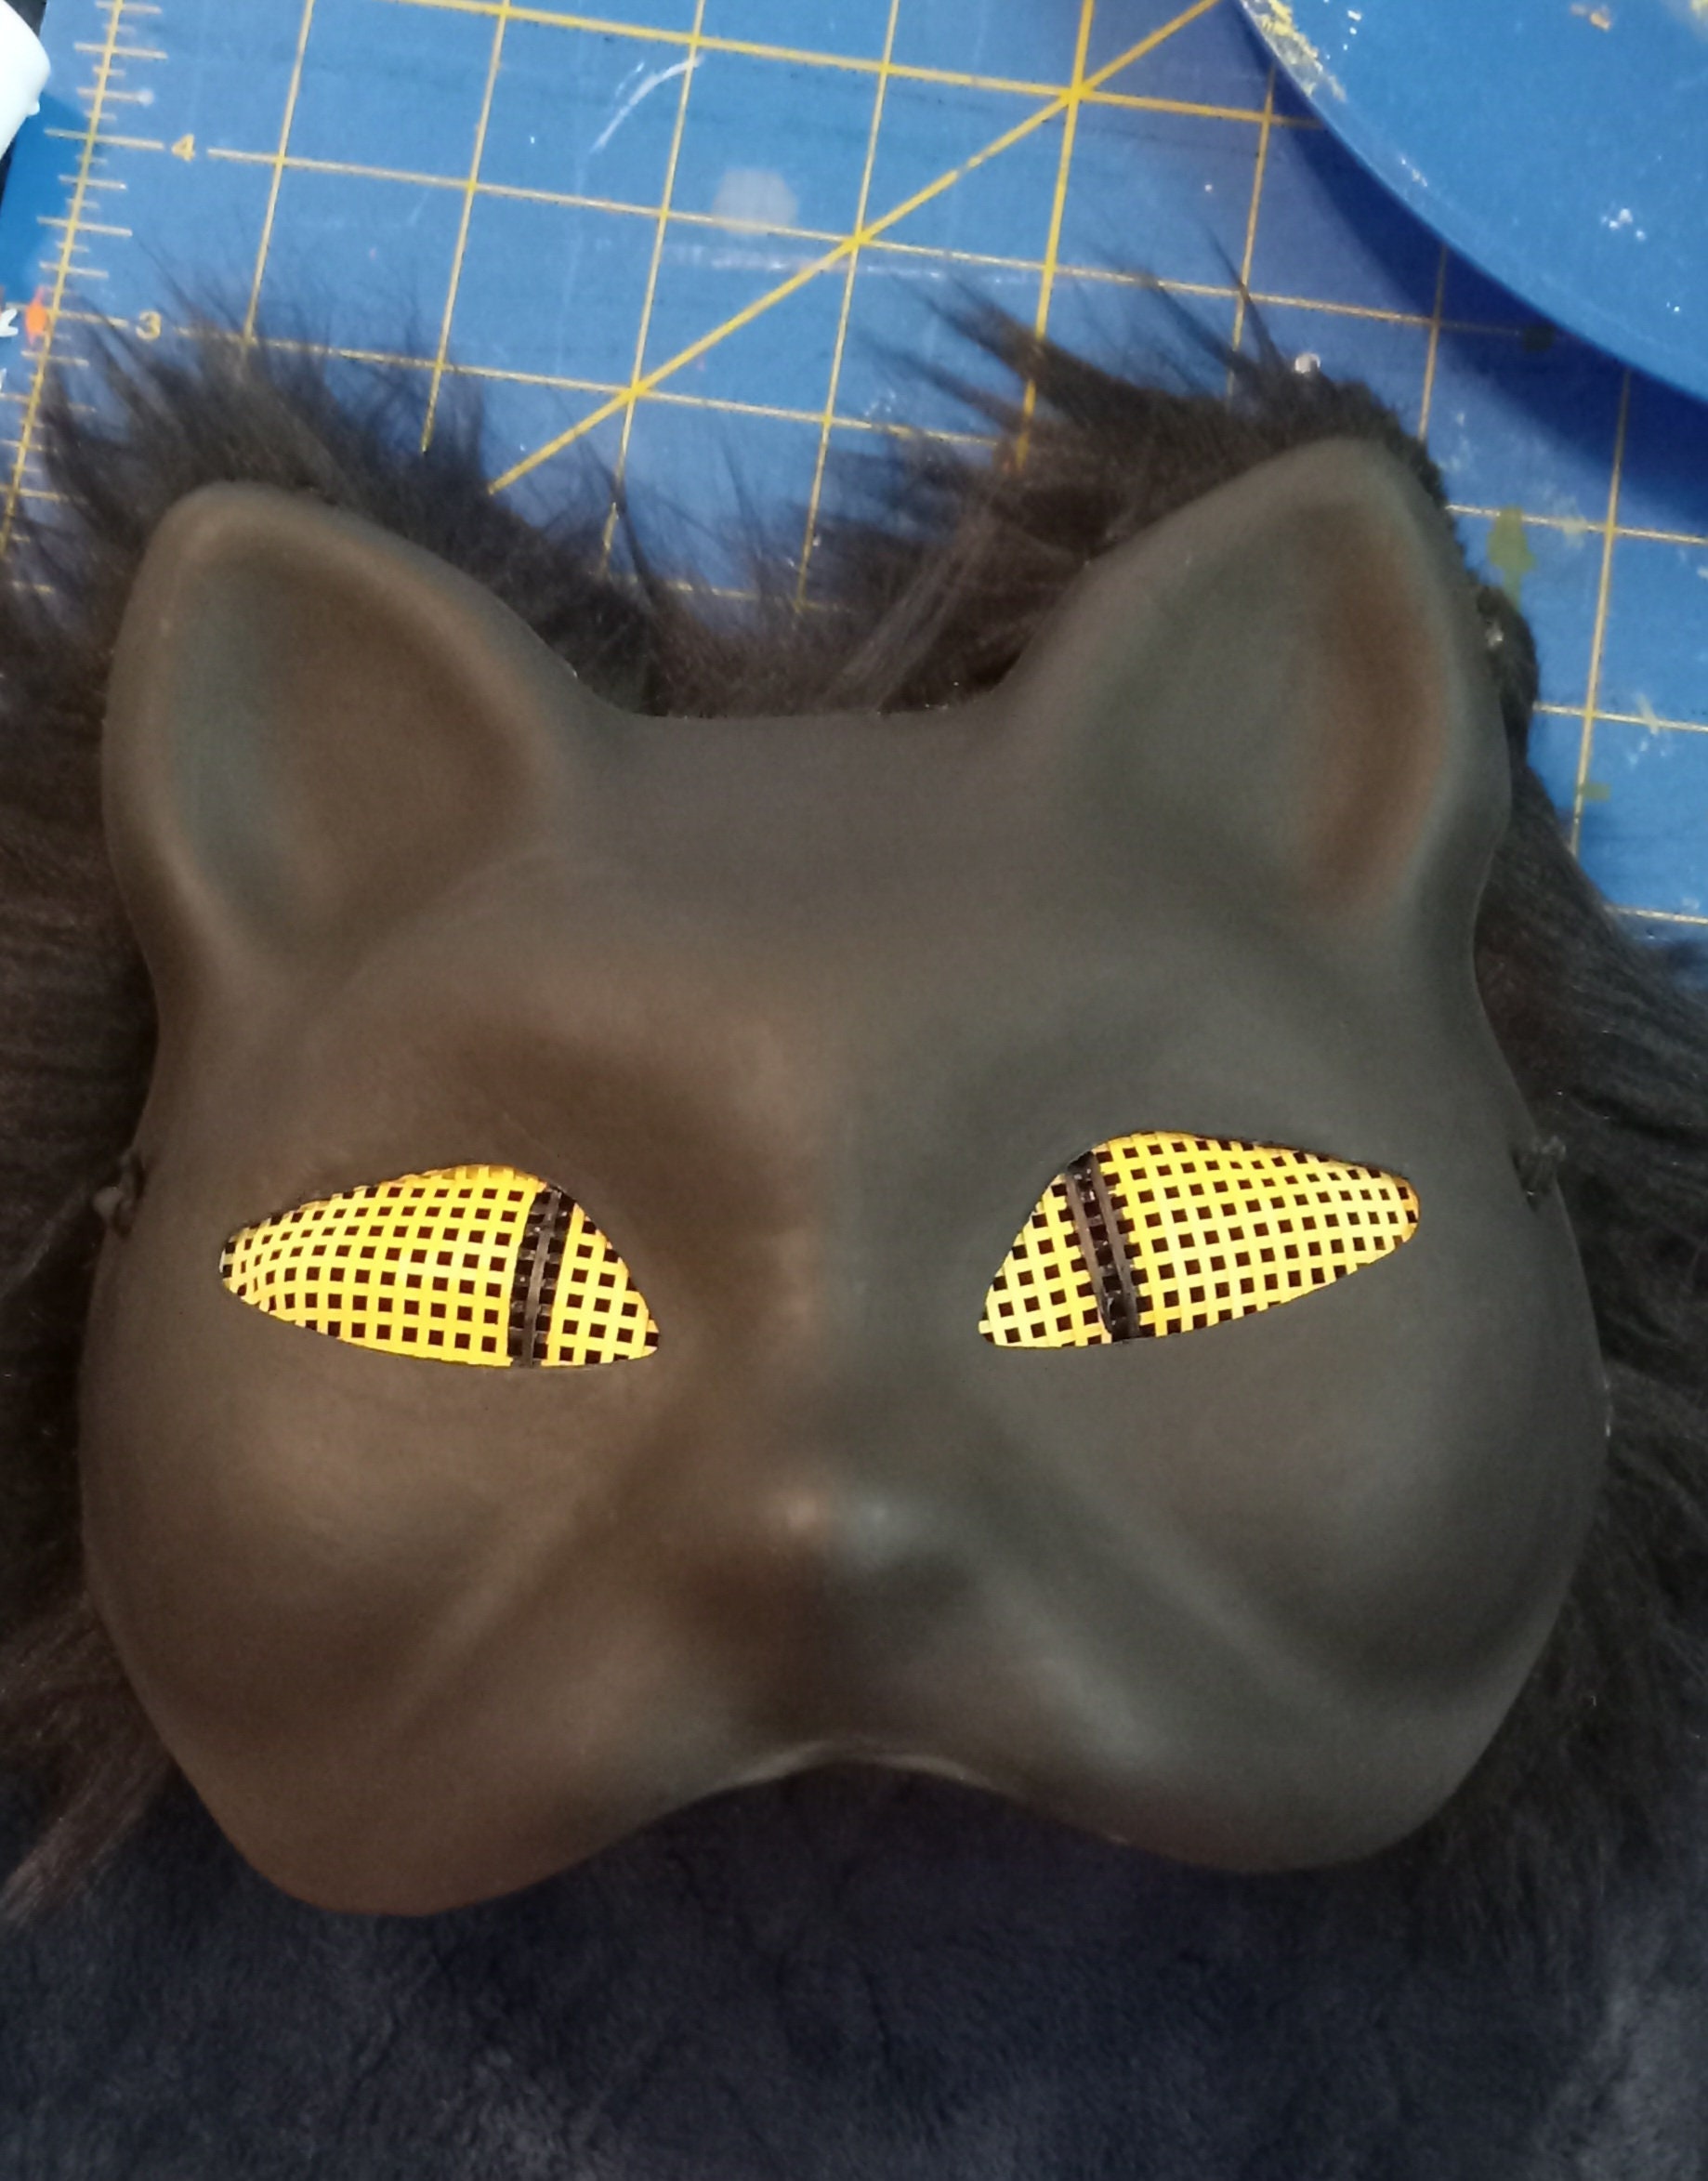 Therian/quadrobics Custom Mask Commissions 